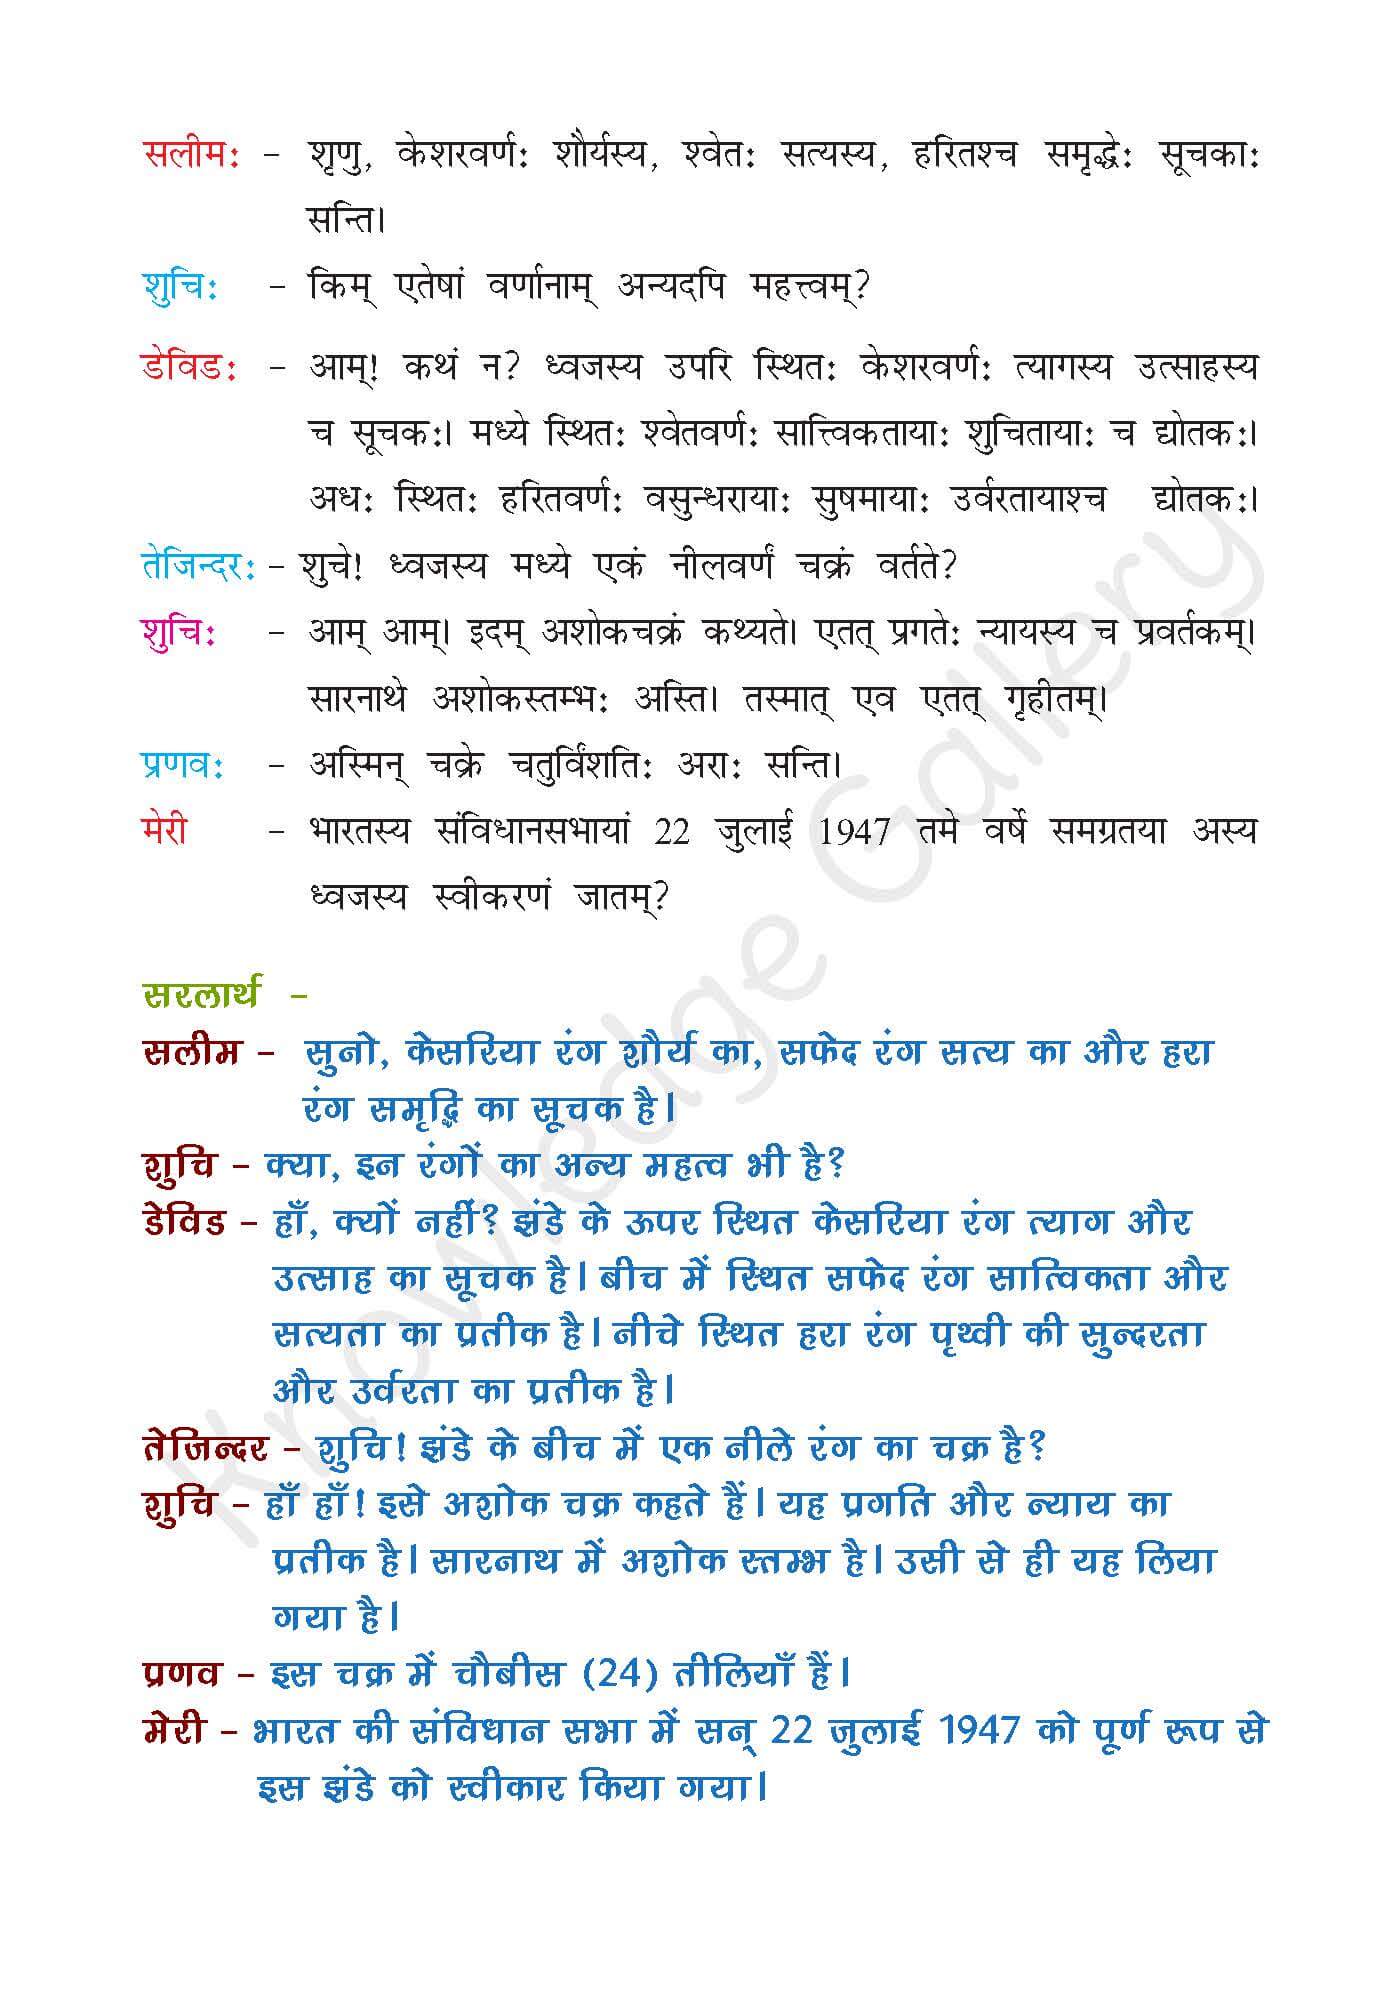 NCERT Solution For Class 7 Sanskrit Chapter 7 part 2